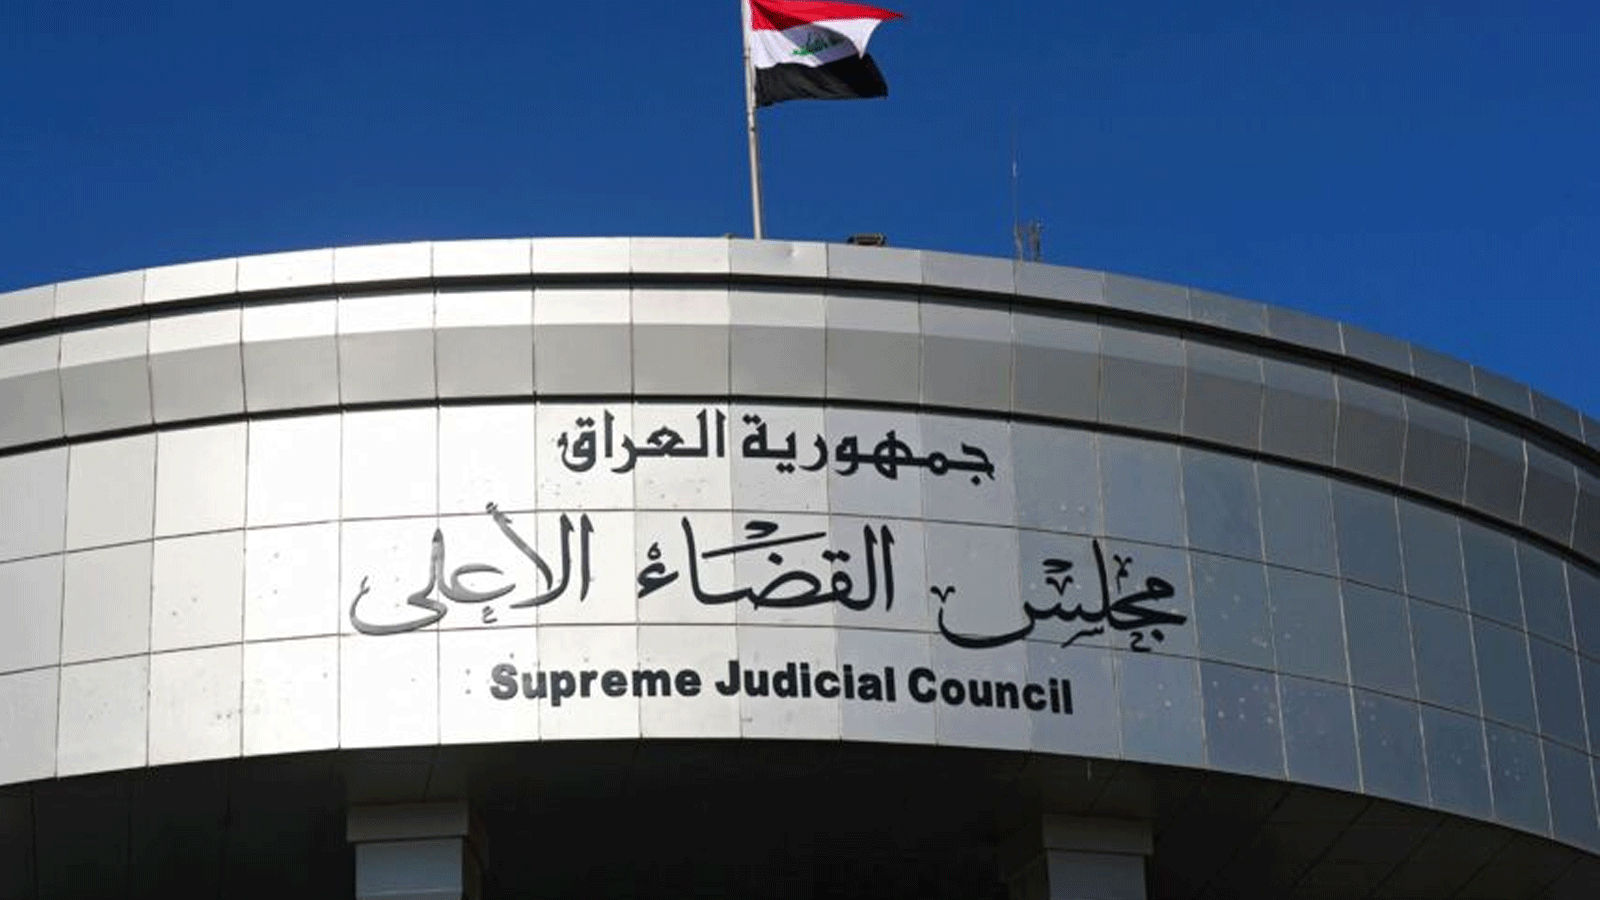 مقرّ السلطة القضائية العراقية في بغداد، حيث صدرت الاحد 2 تشرين الأول\أكتوبر 2022 أوامر اعتقال وتحقيق بحق مسؤولين كبار في وزارة الدفاع (القضاء)